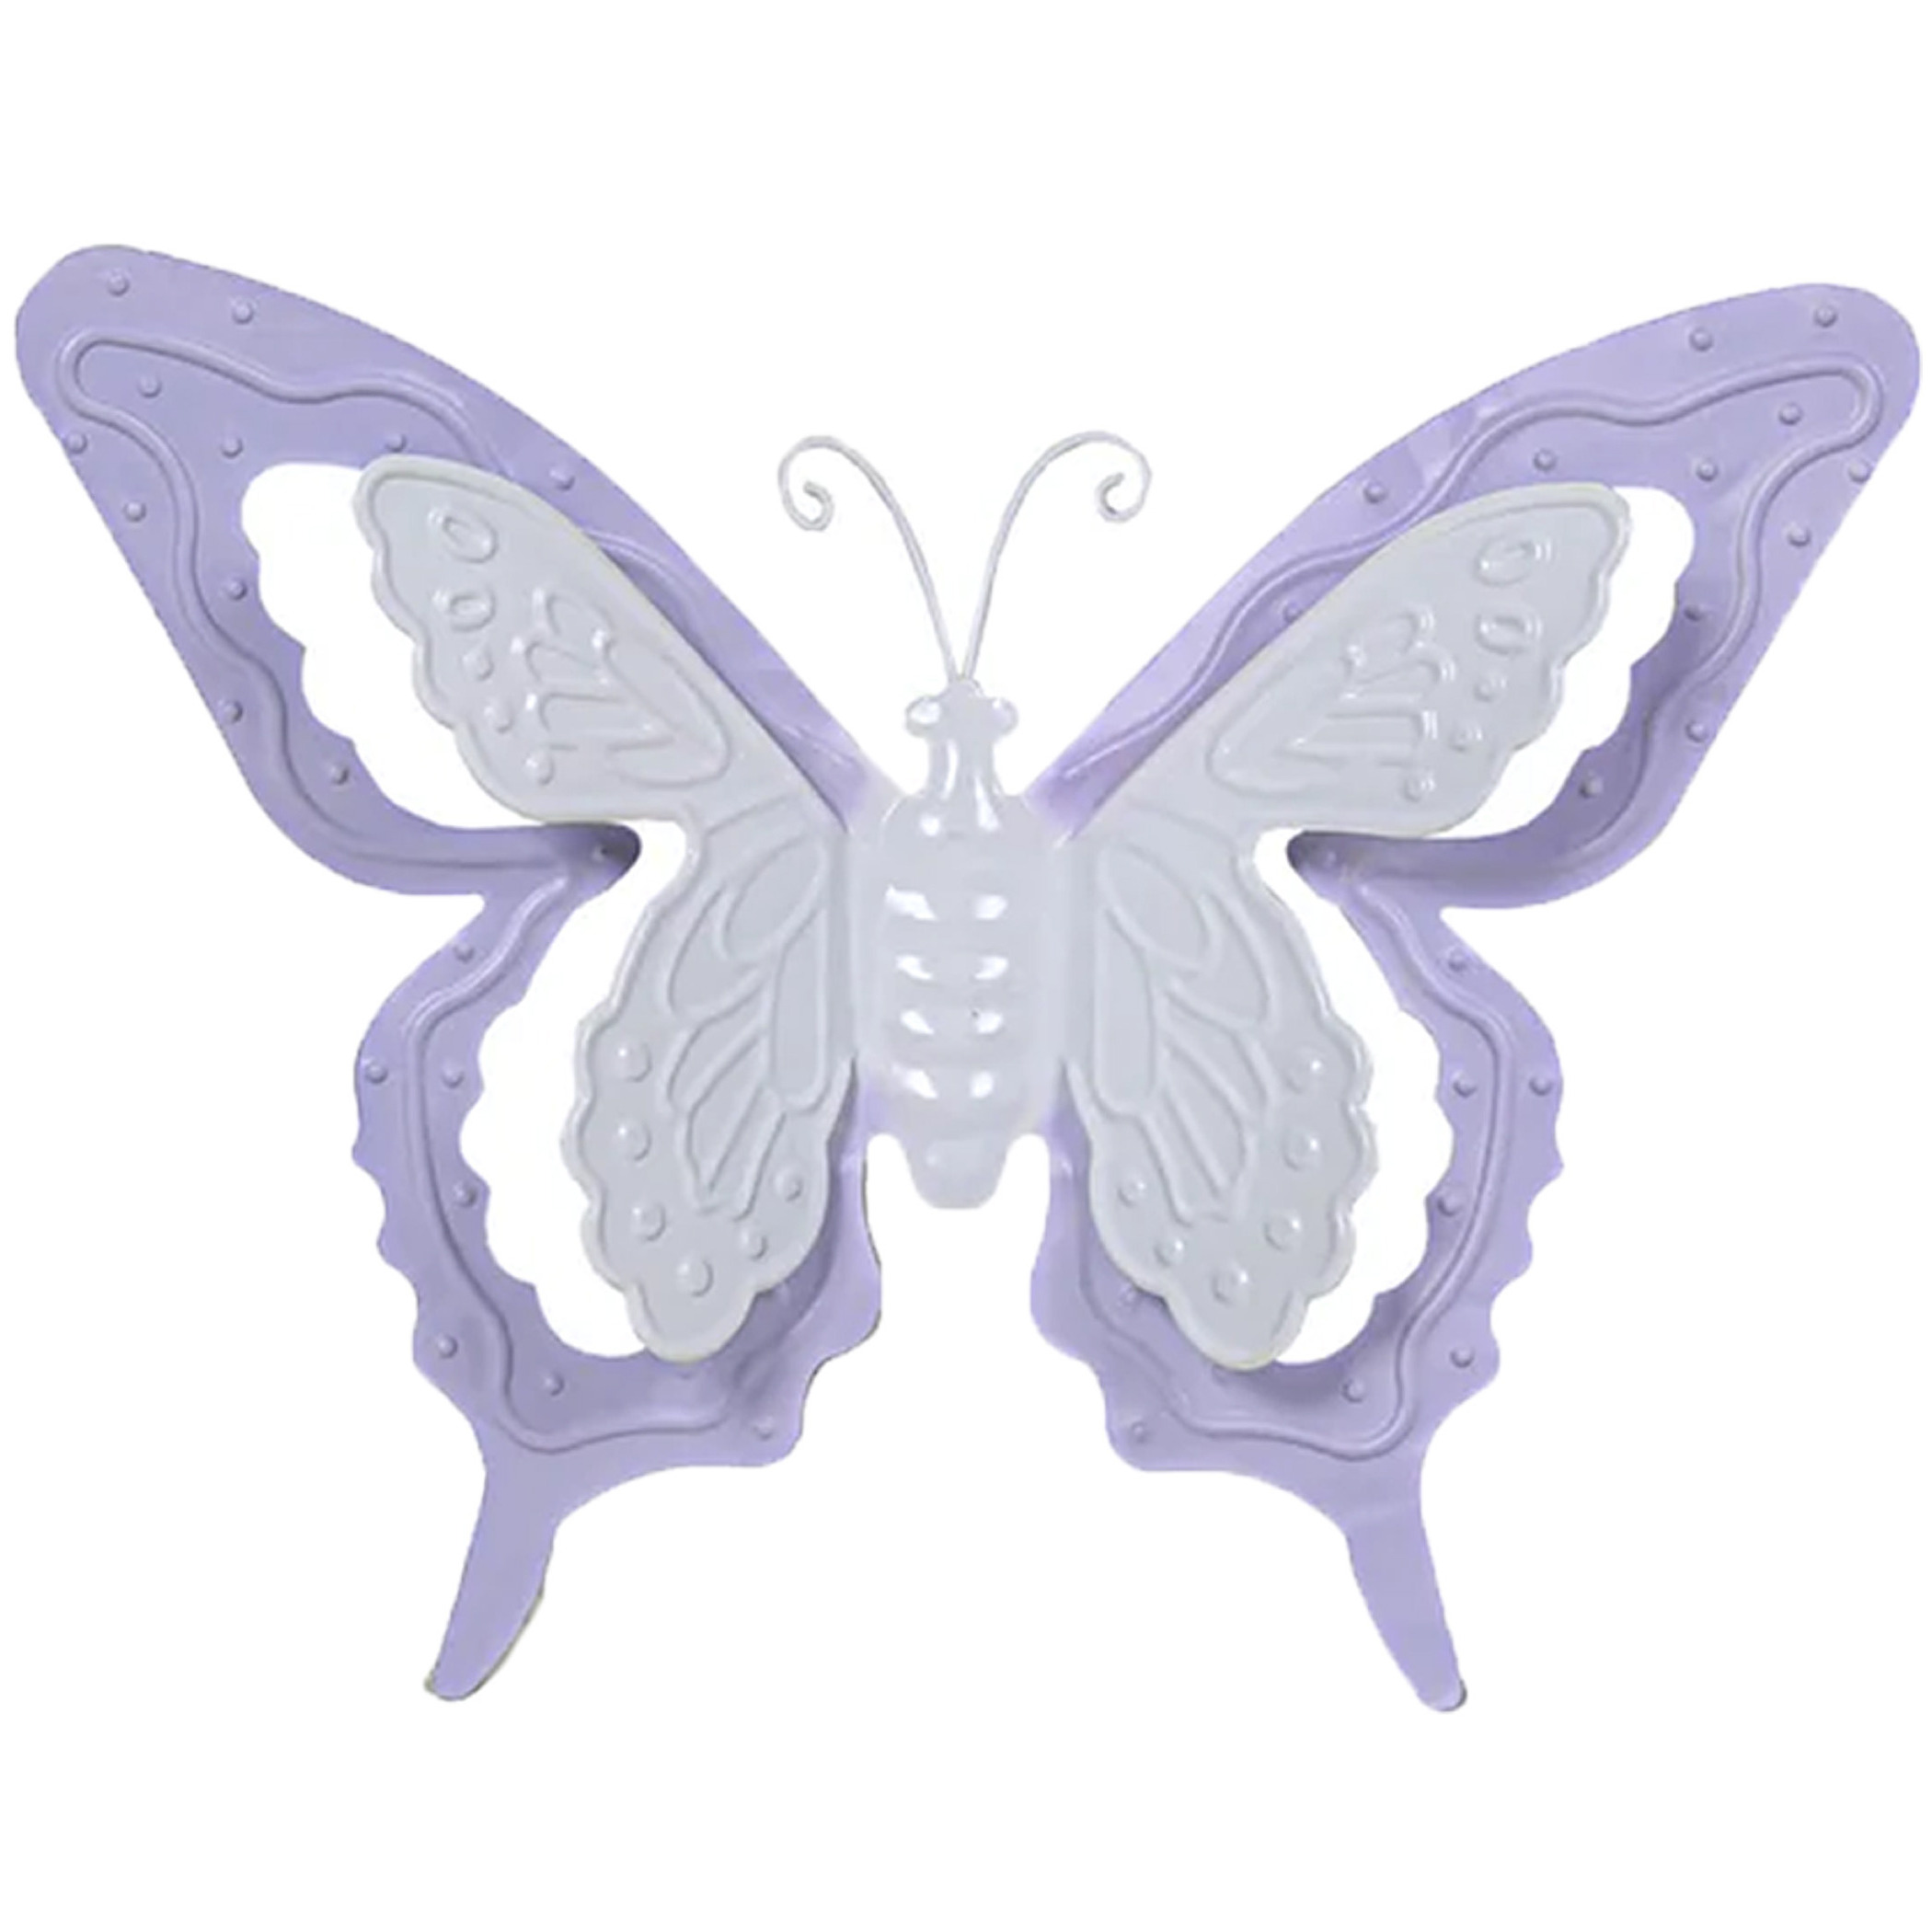 Tuin-schutting decoratie vlinder metaal lila paars 24 x 18 cm